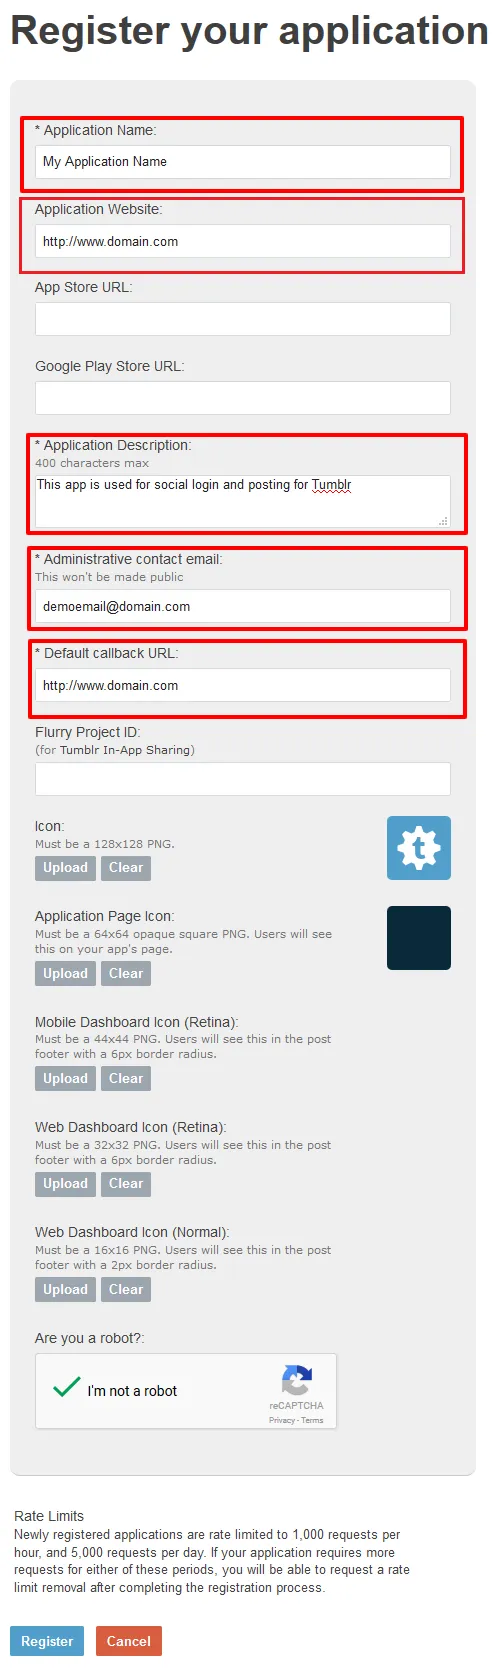 tumblr login wordpress application information & Redirect URL